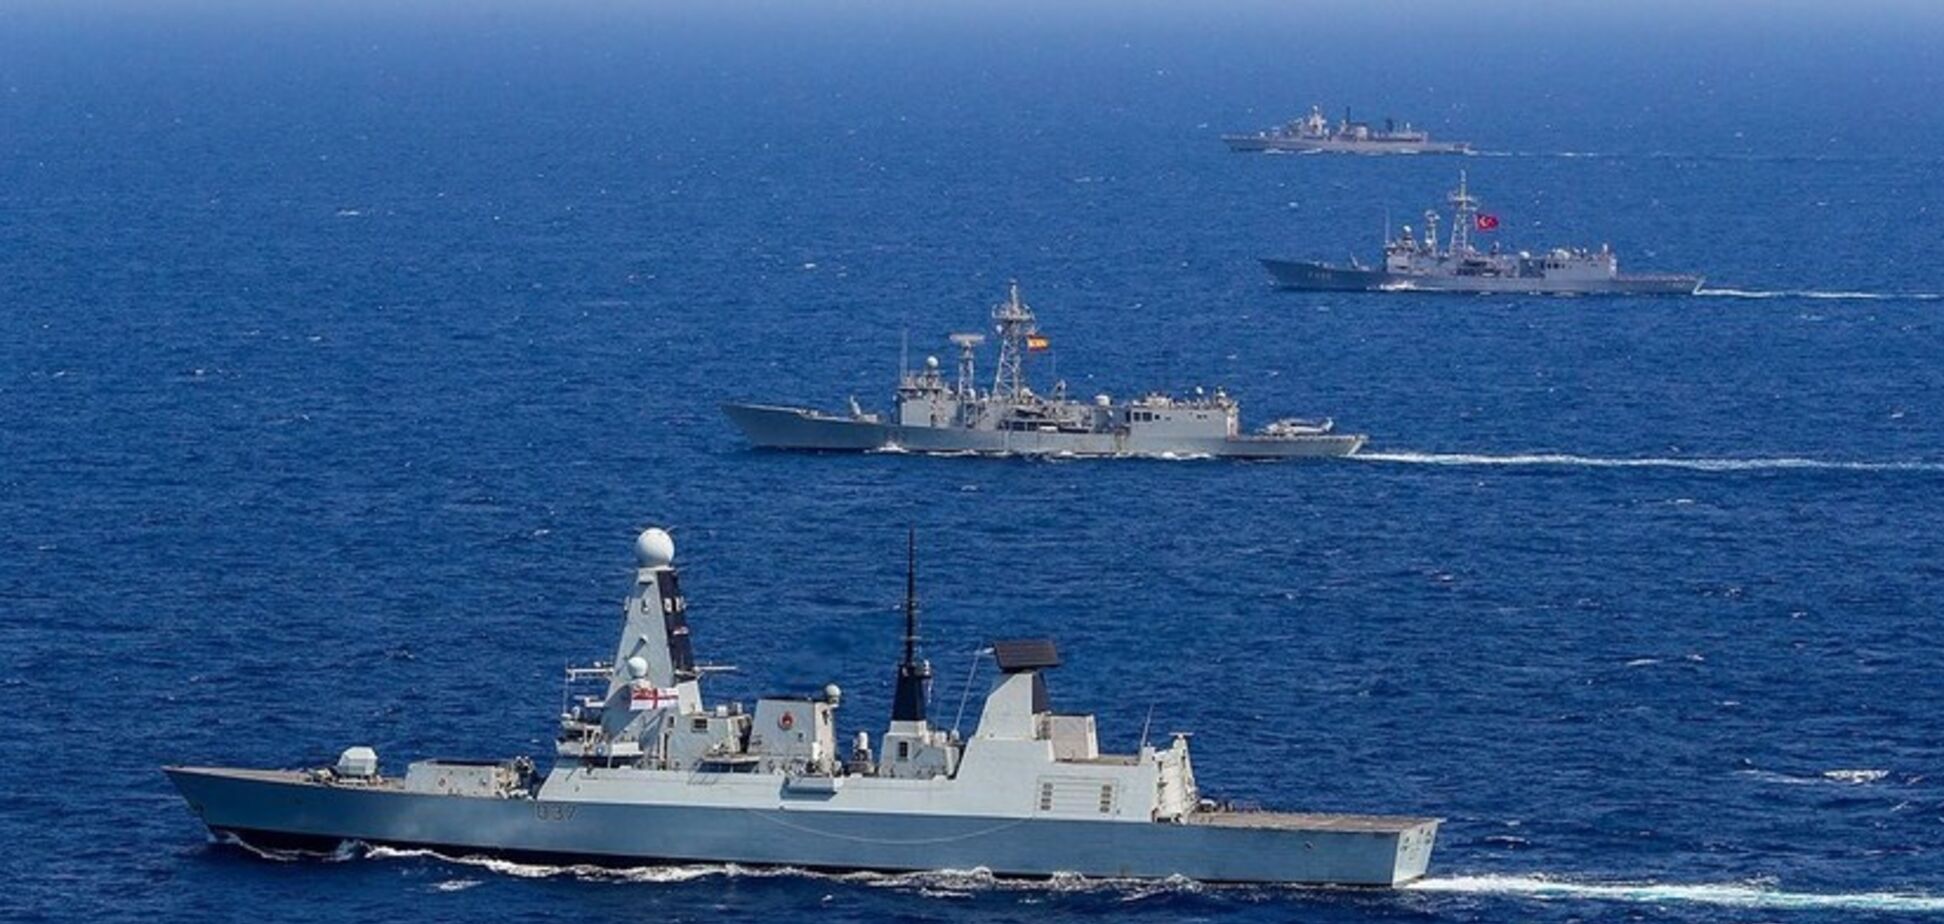  Россия бросила ударную группировку кораблей против НАТО: что происходит